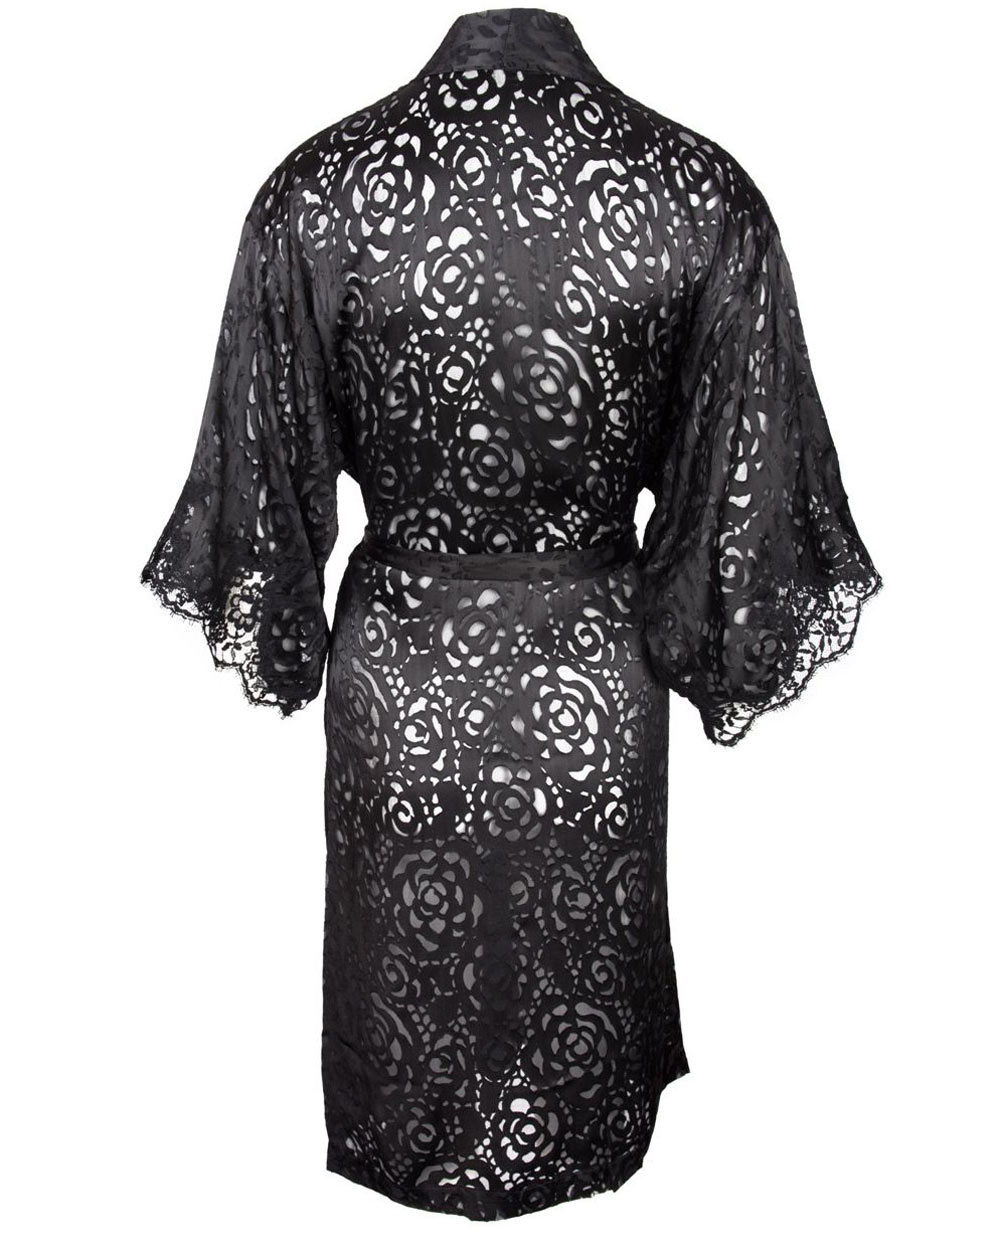 Lise Charmel Negligee oder Kimono Serie Dressing Floral - Detailansicht Rückenansicht